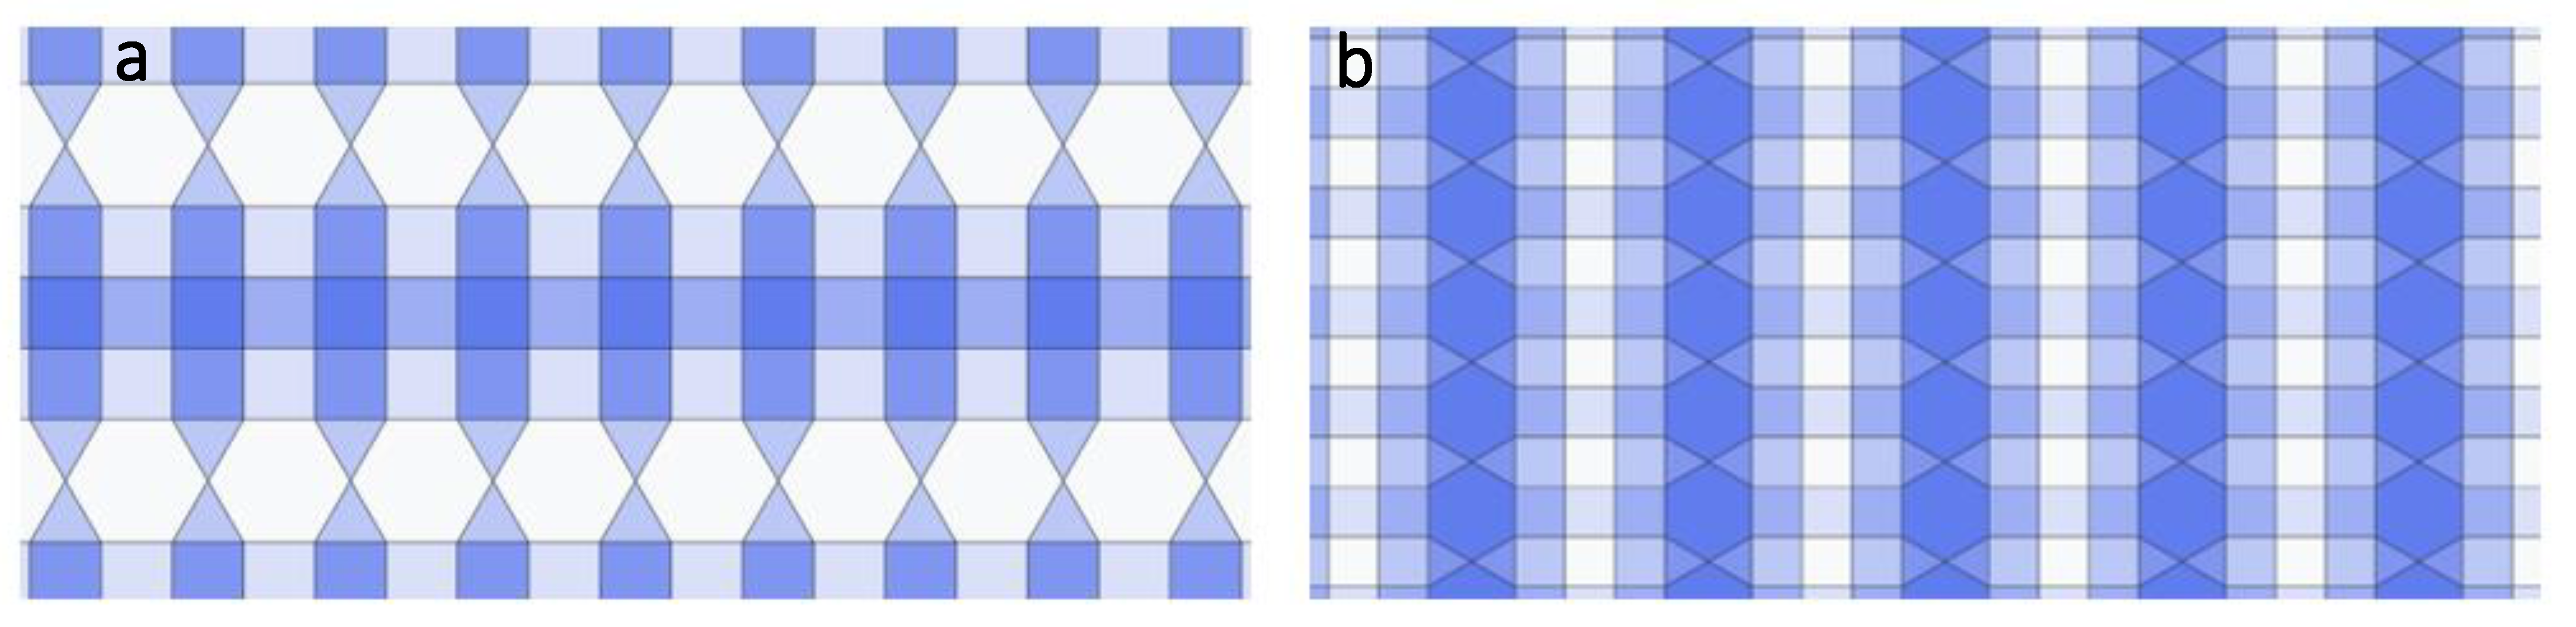 GomJau-Hogg\'s Notation (chú thích) đối xứng là một phương pháp rất hữu ích để diễn tả sự đối xứng trong hình học. Nếu bạn đam mê bộ môn toán học, hãy xem bức ảnh liên quan để tìm hiểu nhiều hơn về chú thích đối xứng này và trải nghiệm sự tuyệt vời của nó.